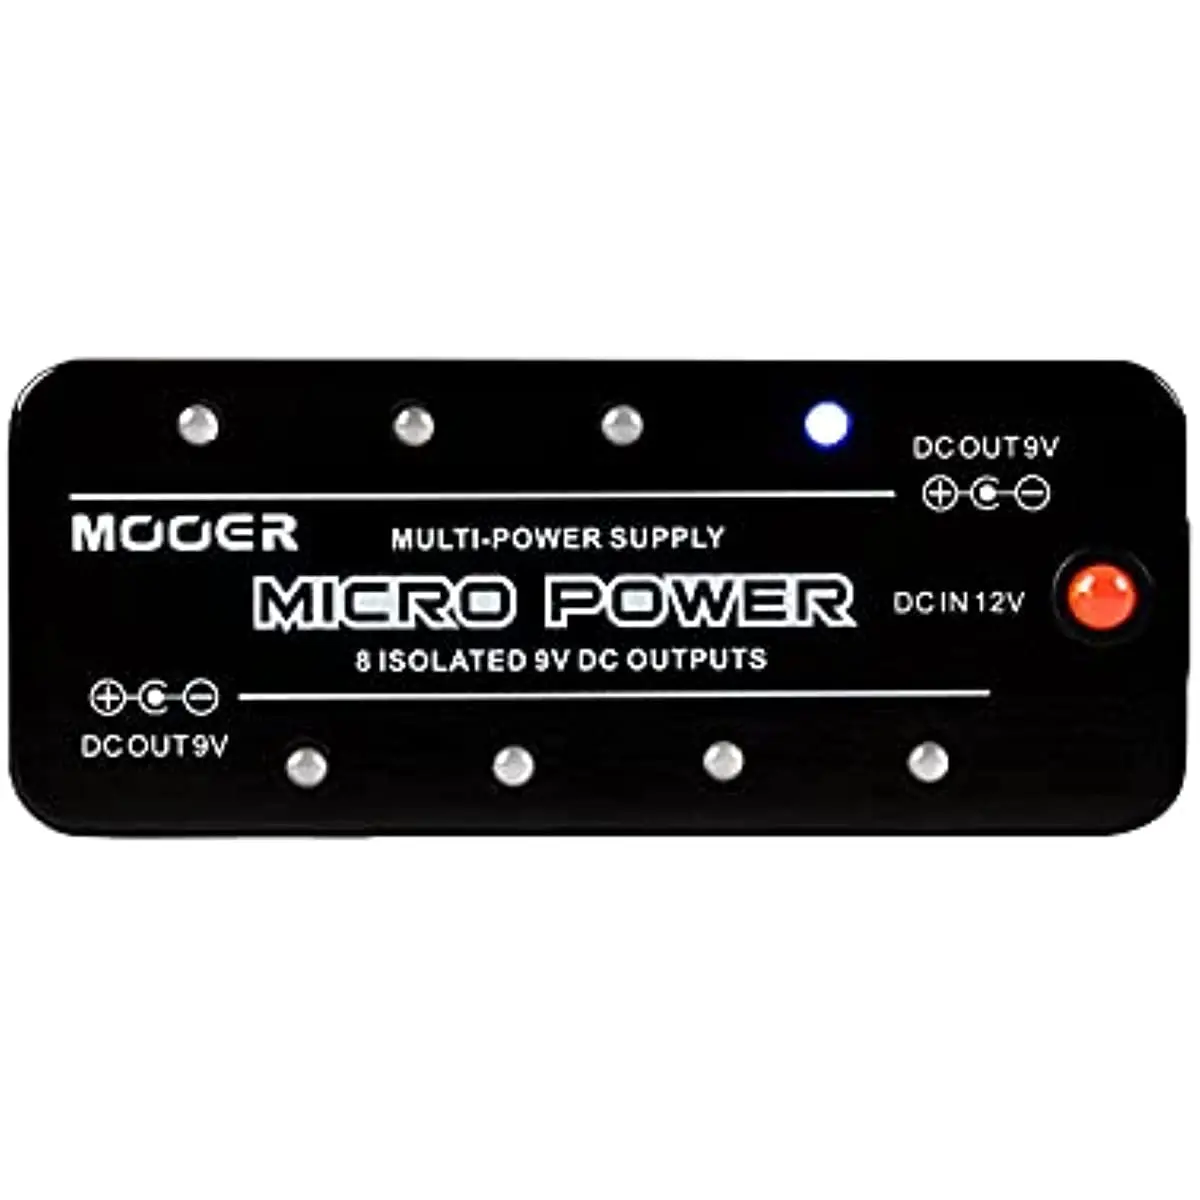 Mooer Micro Power. Блок питания mooer macro Power s12. Mooer Micro Power s8. Mooer Power Supply Micro. Эффект микро